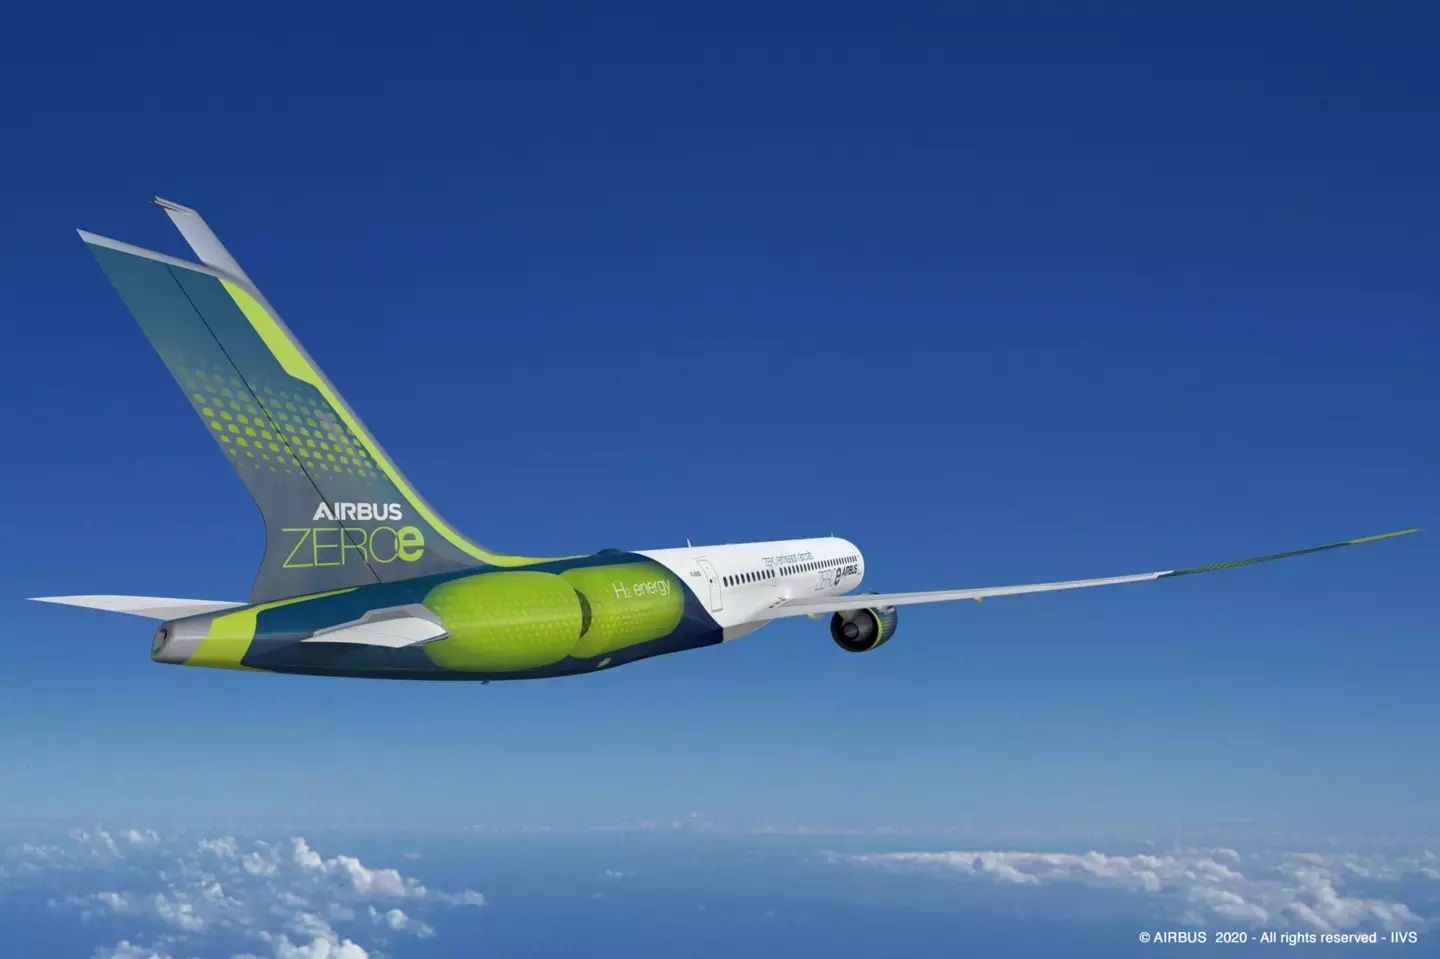 En octubre de 2021, la industria de la aviación adoptó el objetivo climático a largo plazo de Cero emisiones netas de carbono para 2050.  AIRBUS